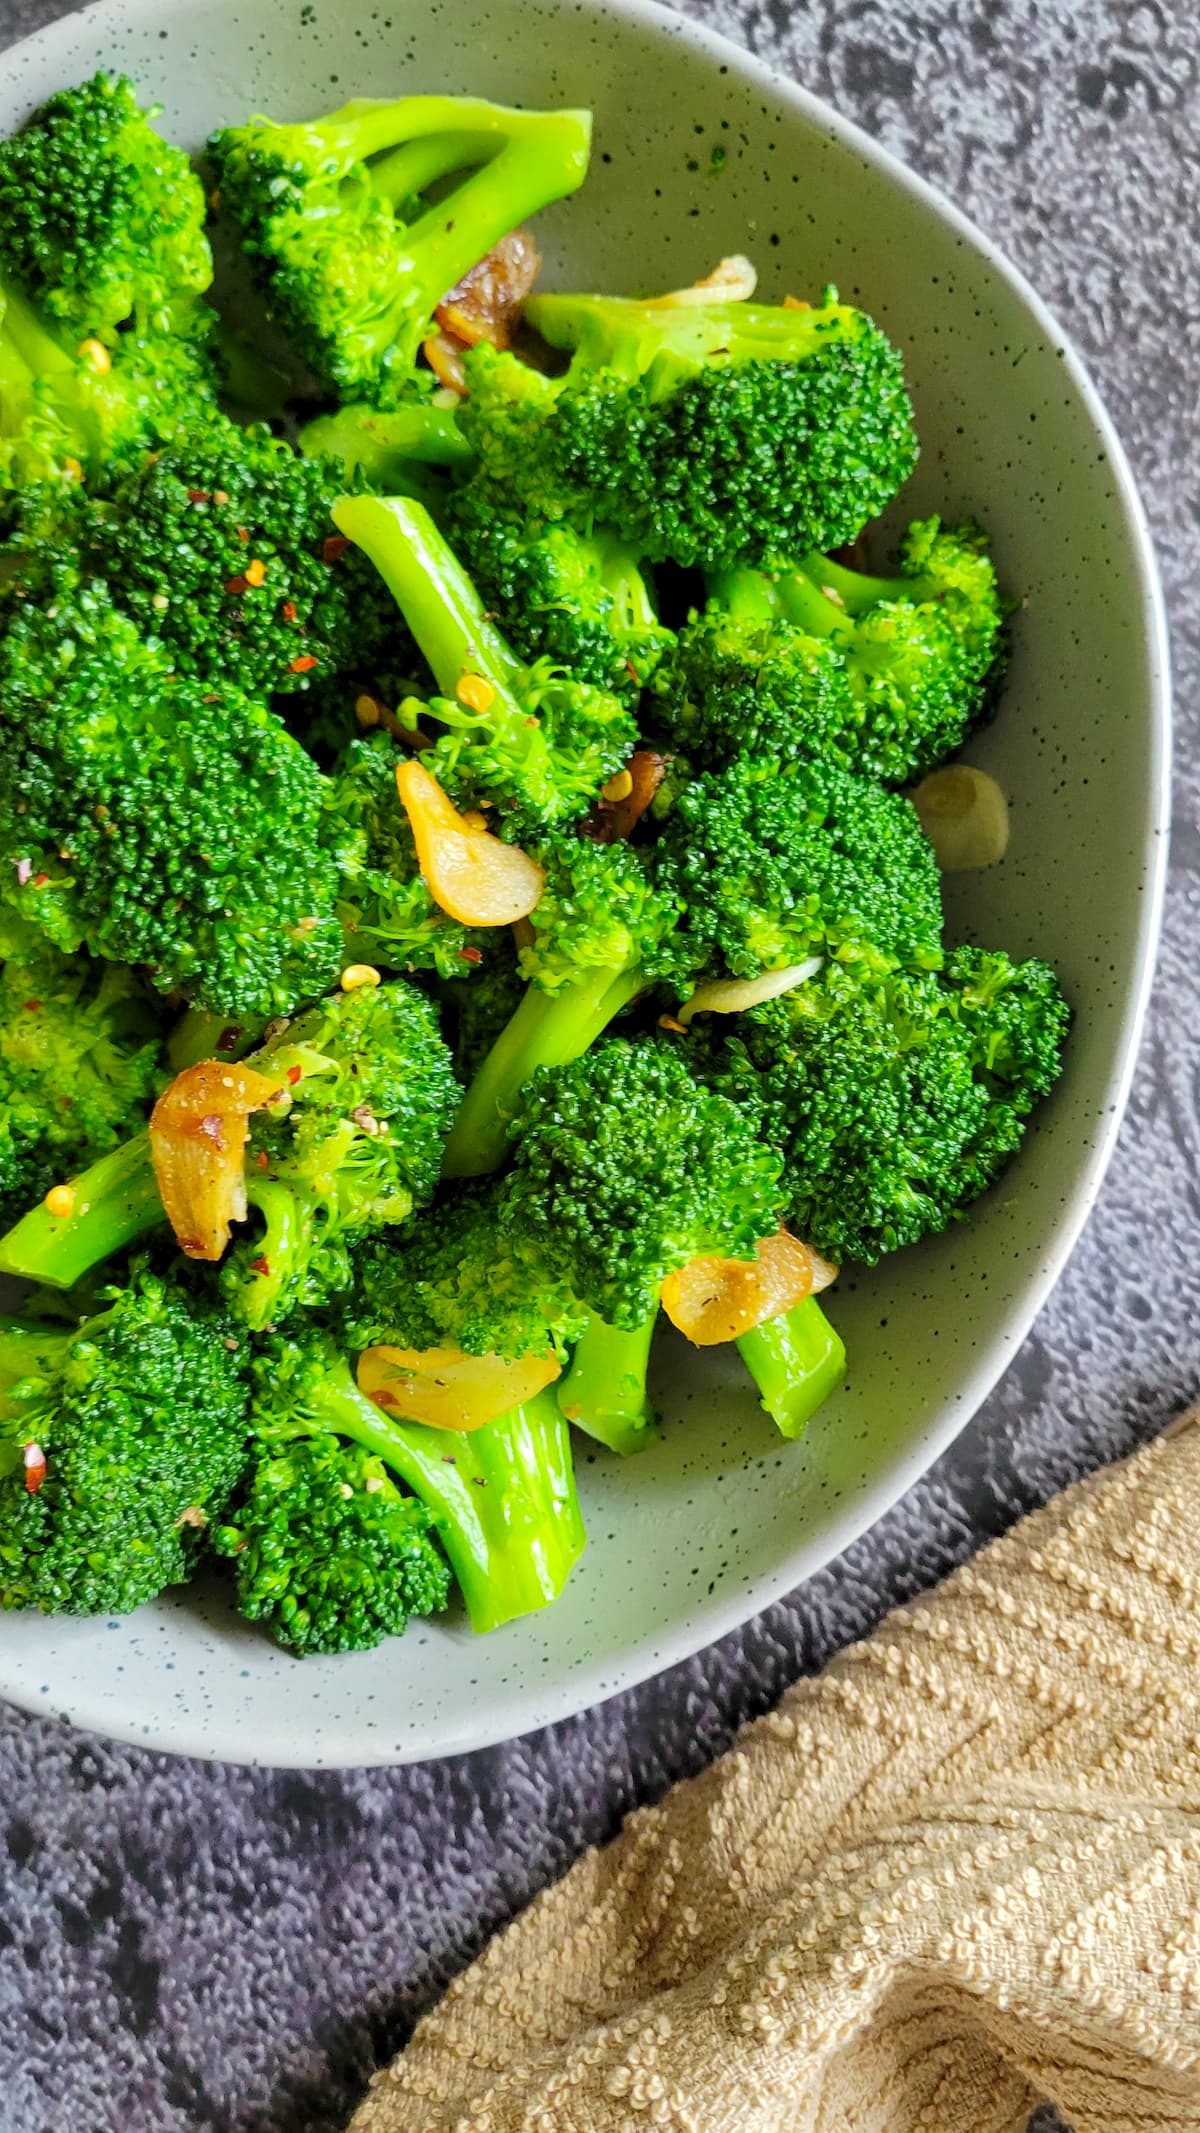 garlic broccoli in a bowl